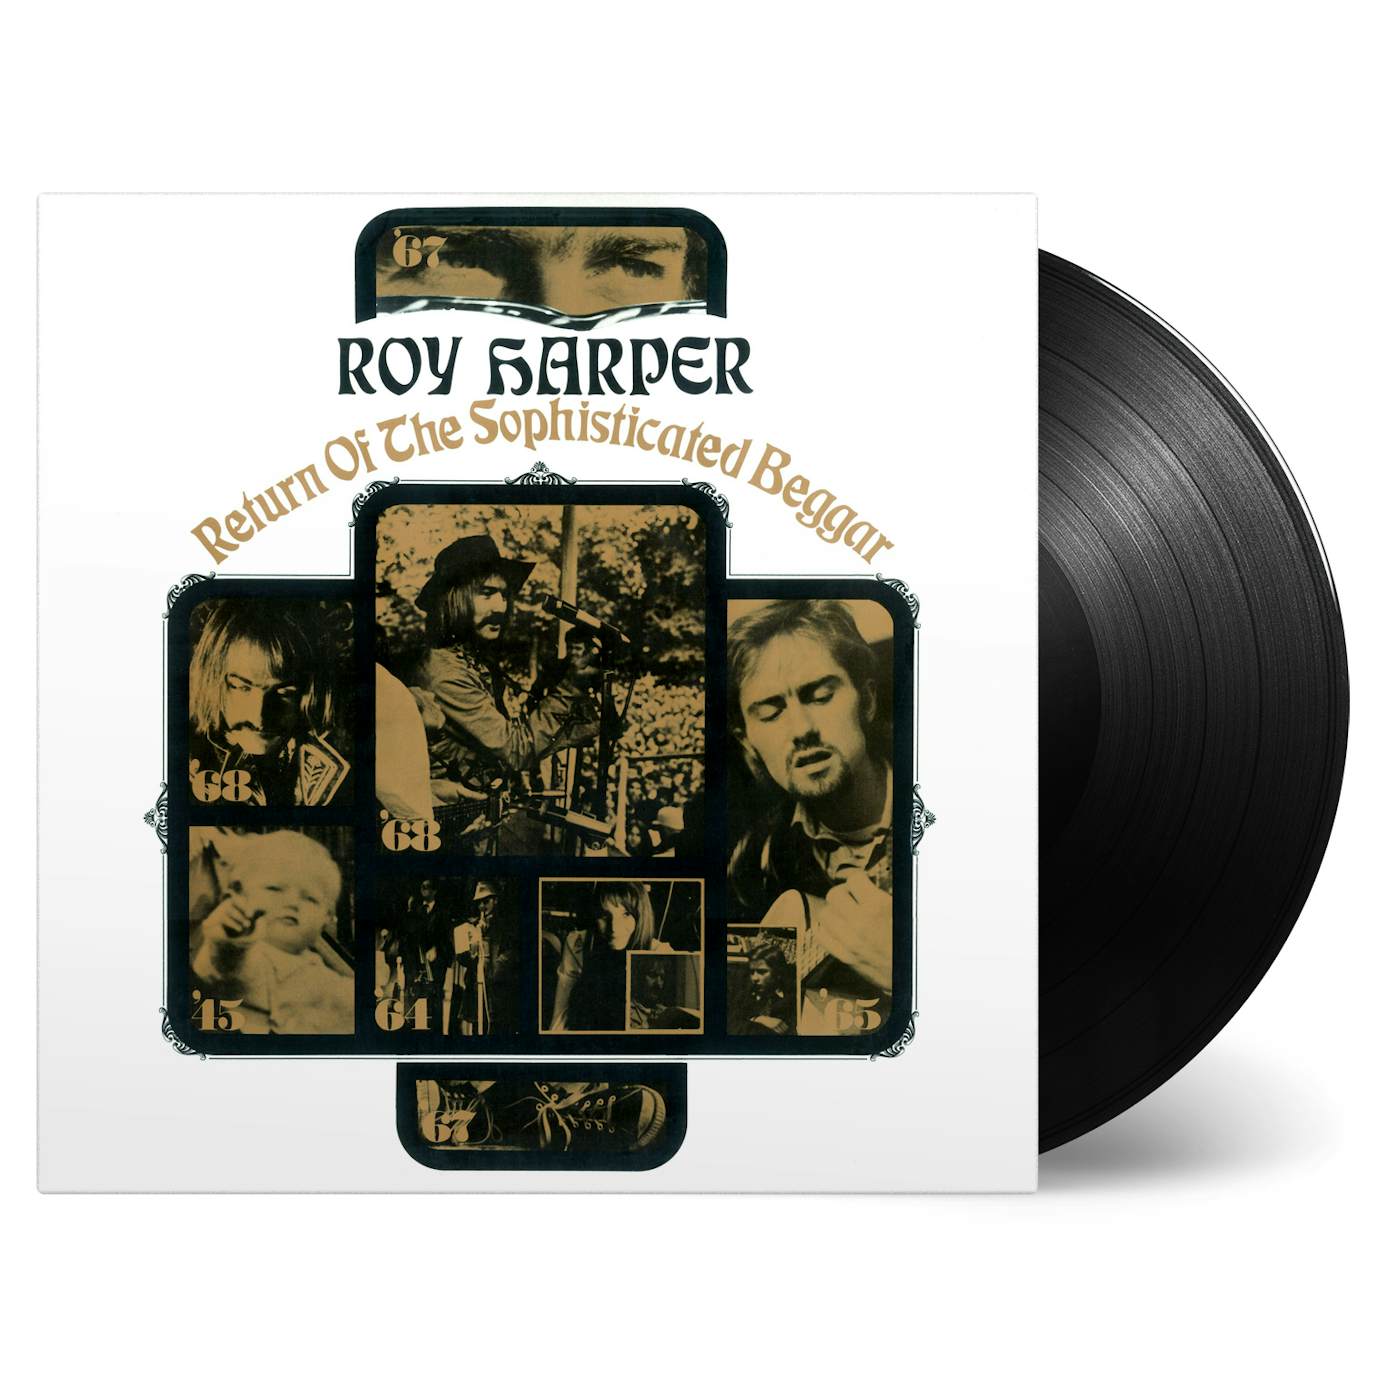 Roy Harper Return Of The Sophisticated Beggar Vinyl Record